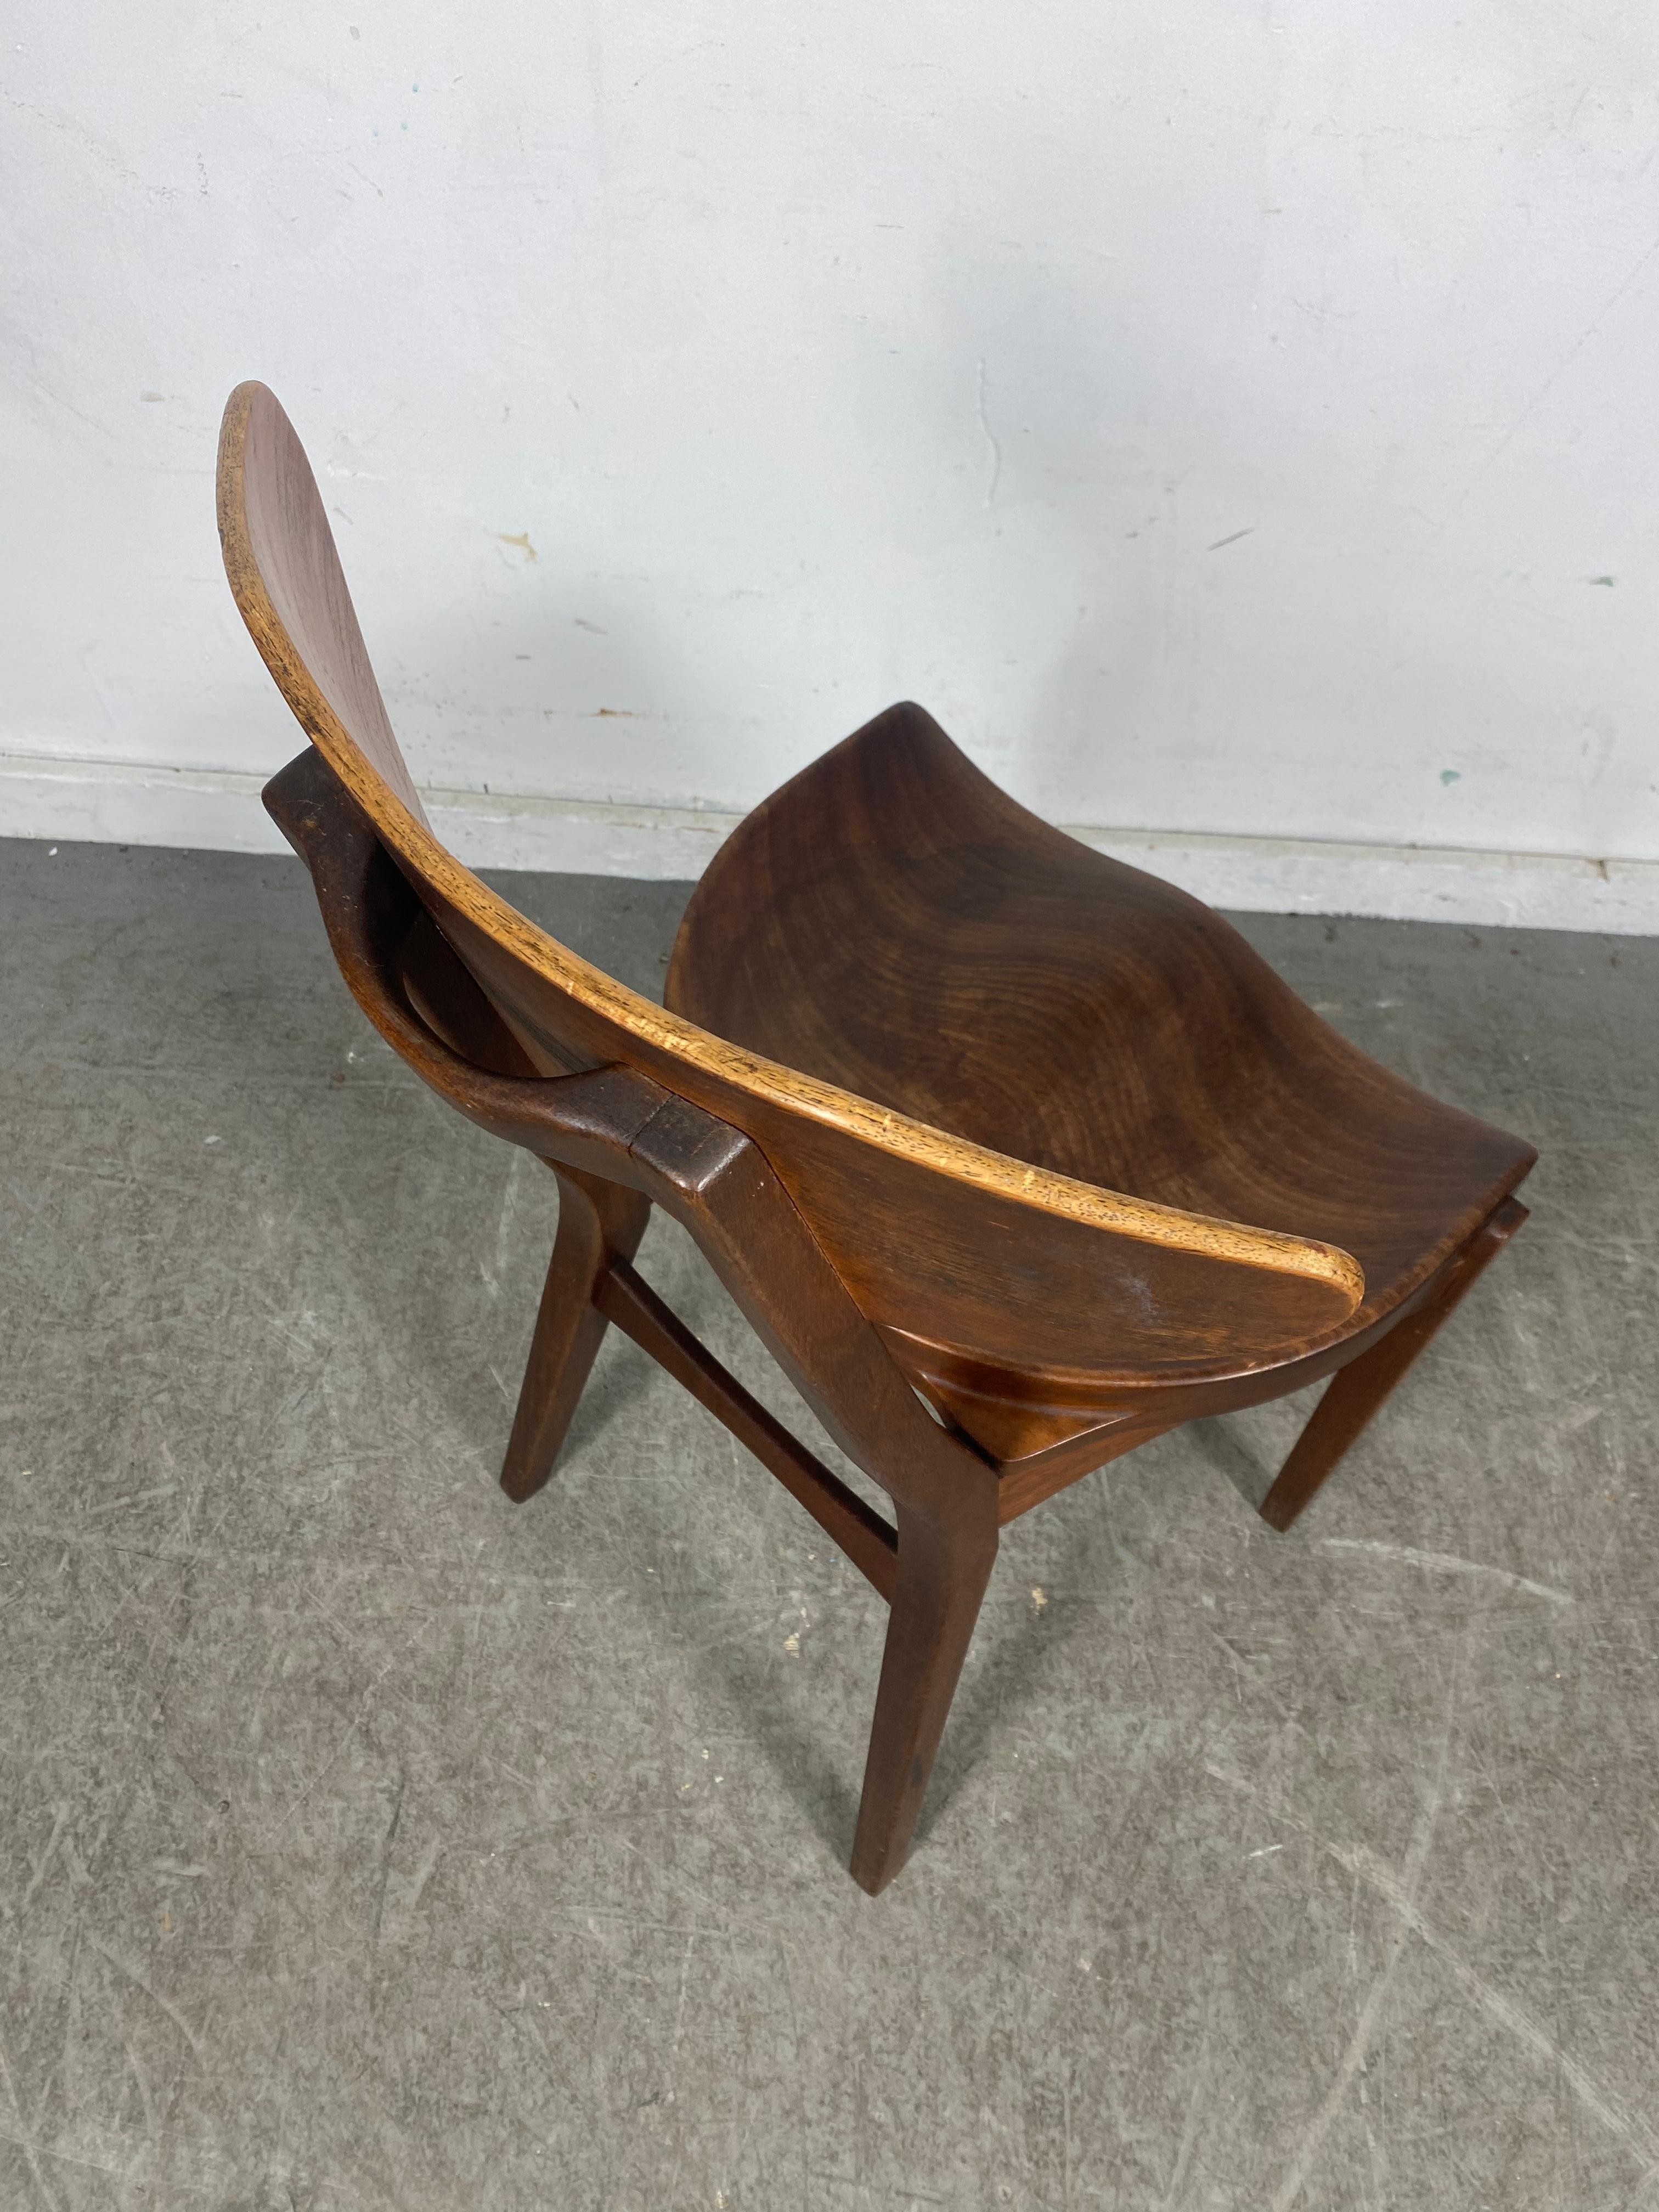 Teak Modernist Sculptural Chair Designed by Richard Jensen and Kjaerulff Rasmusse